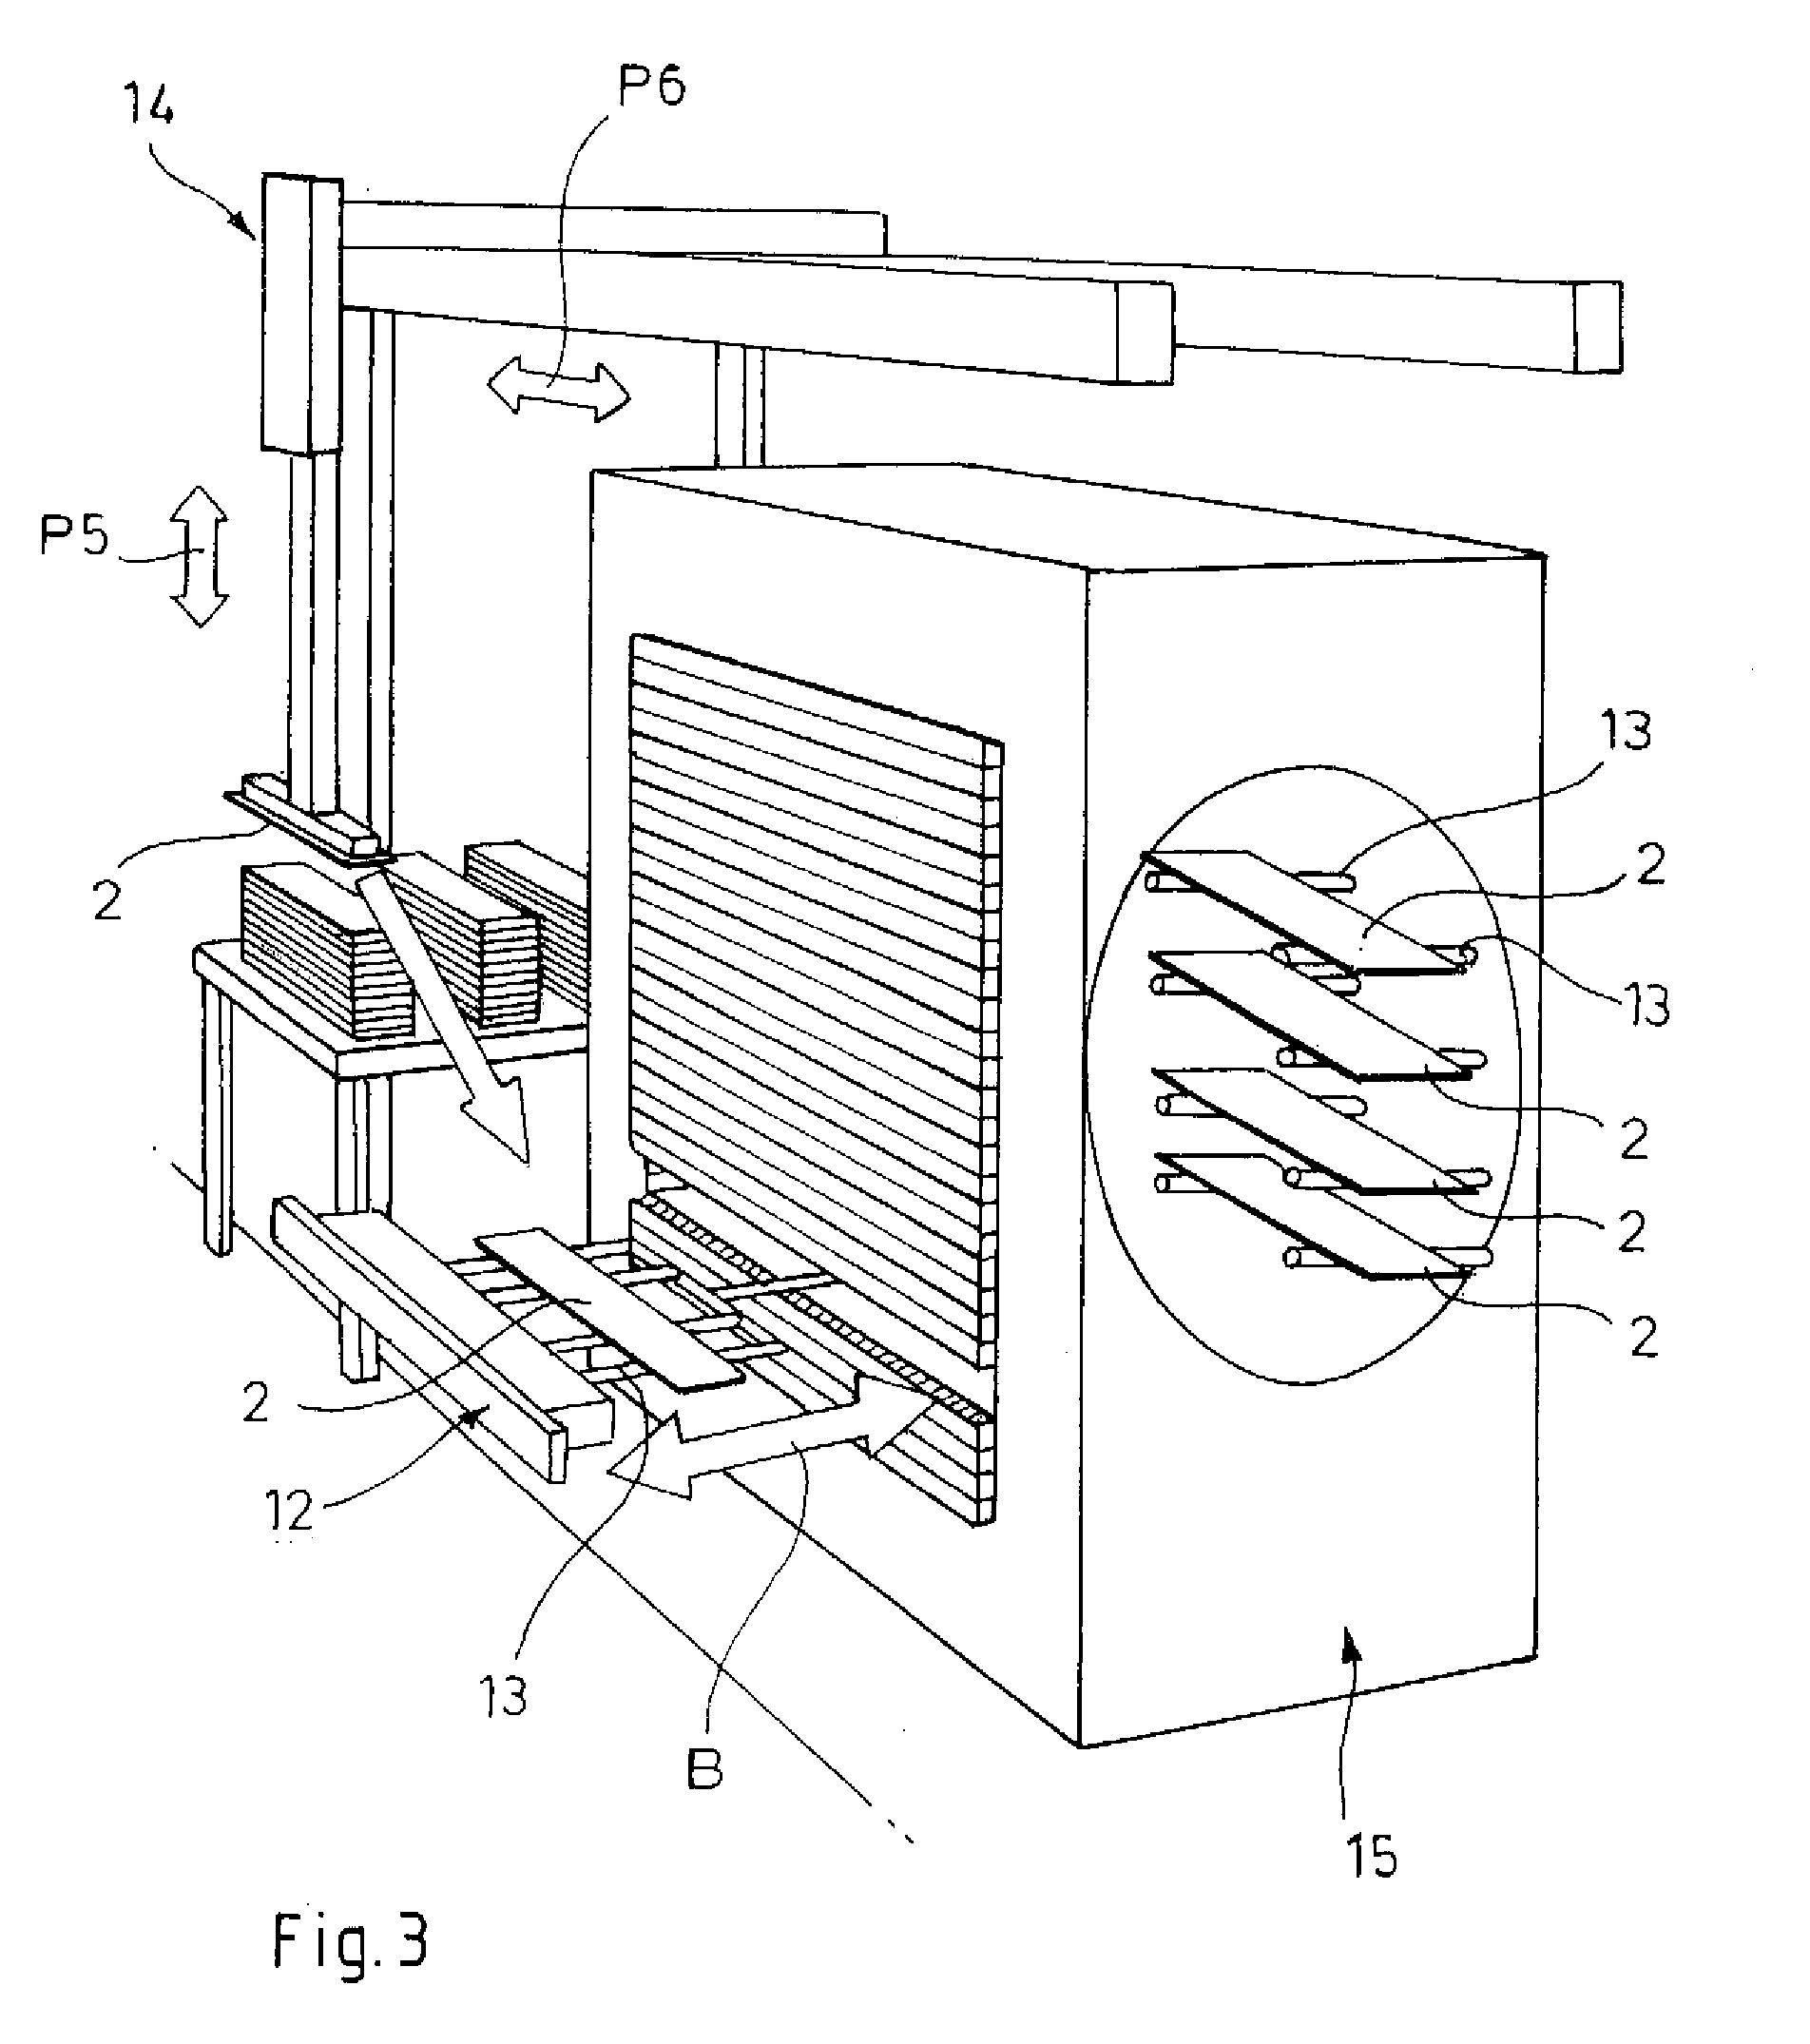 Multi-deck furnace